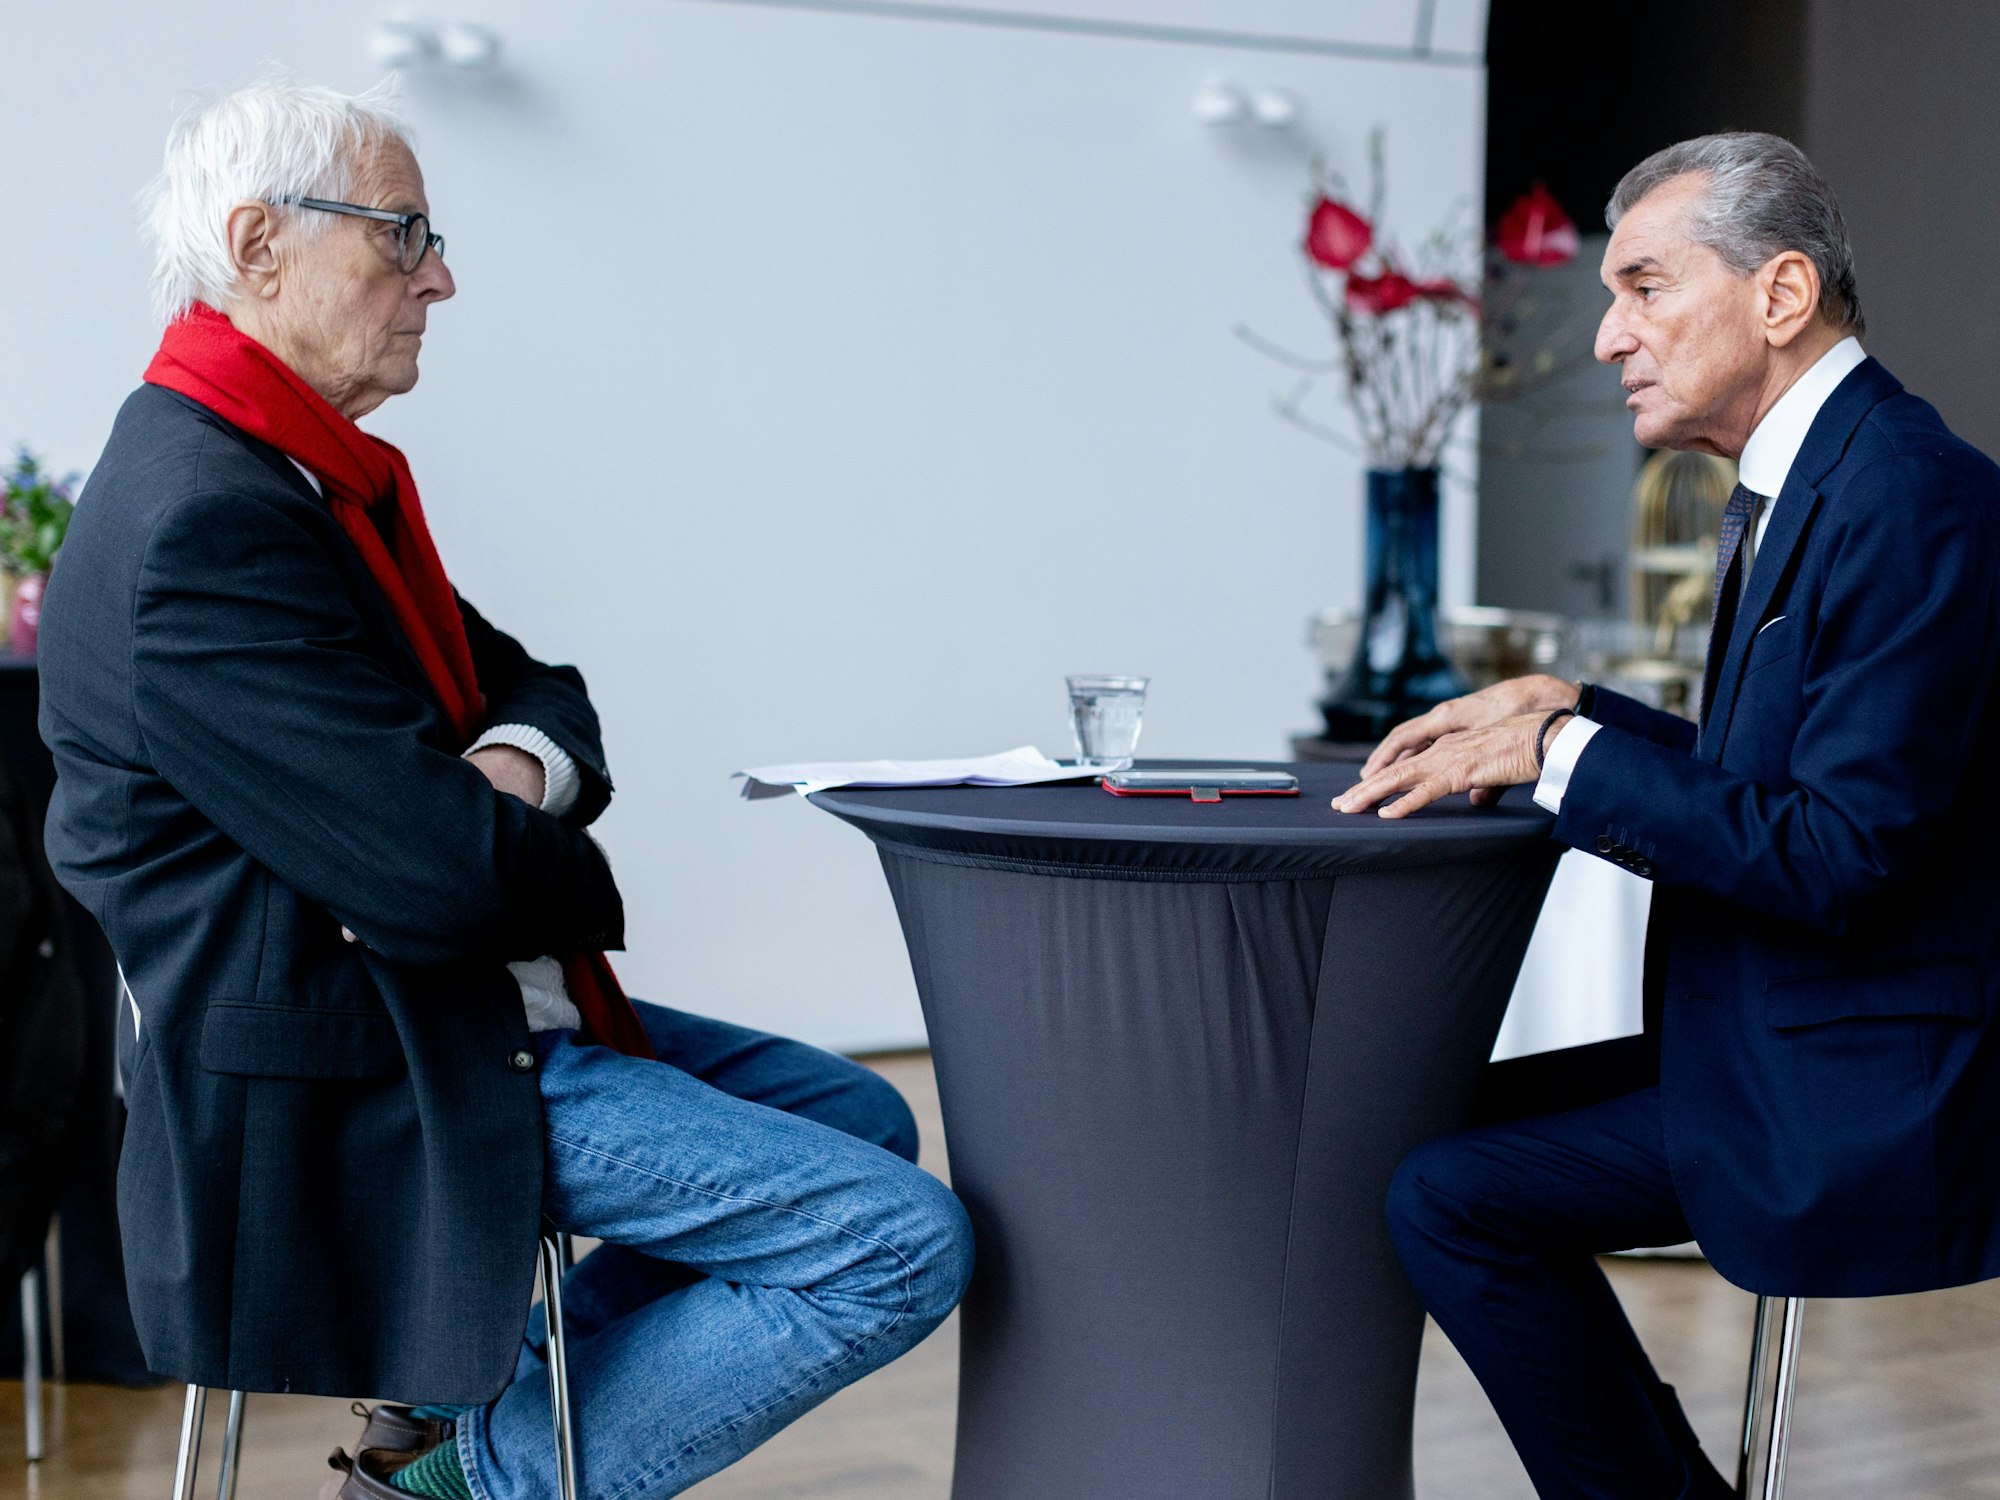 Interview mit Michel Friedman, deutsch-französischer Publizist, Talkmaster, Jurist, Philosoph und ehemaliger Politiker, in der Flora Köln